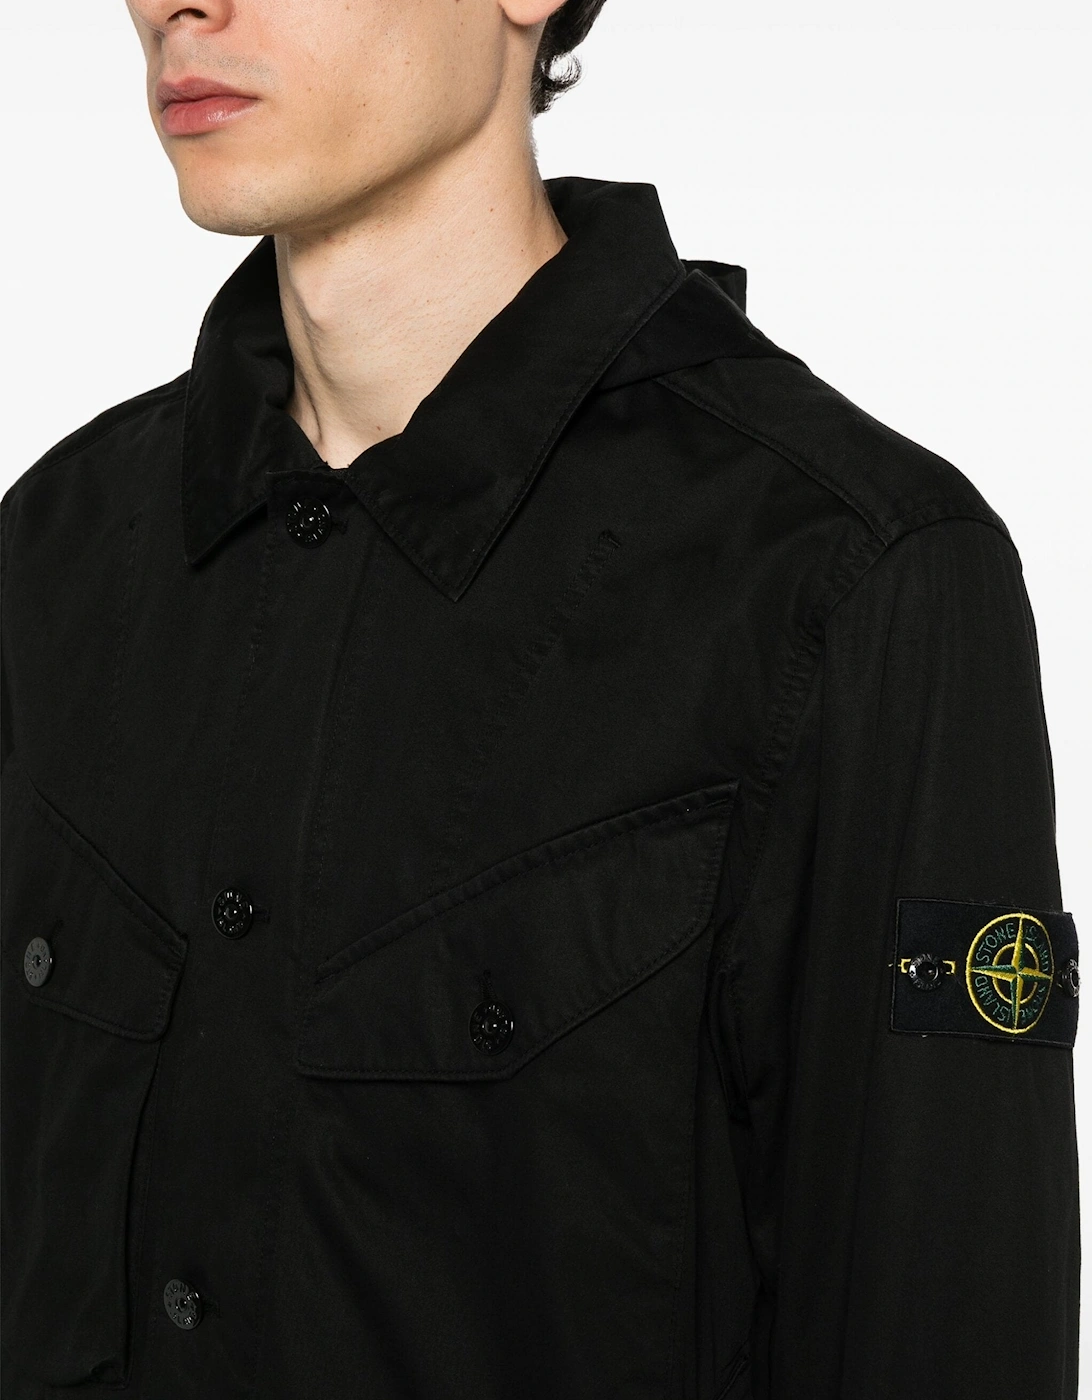 Patch Pocket Hooded Coat Black